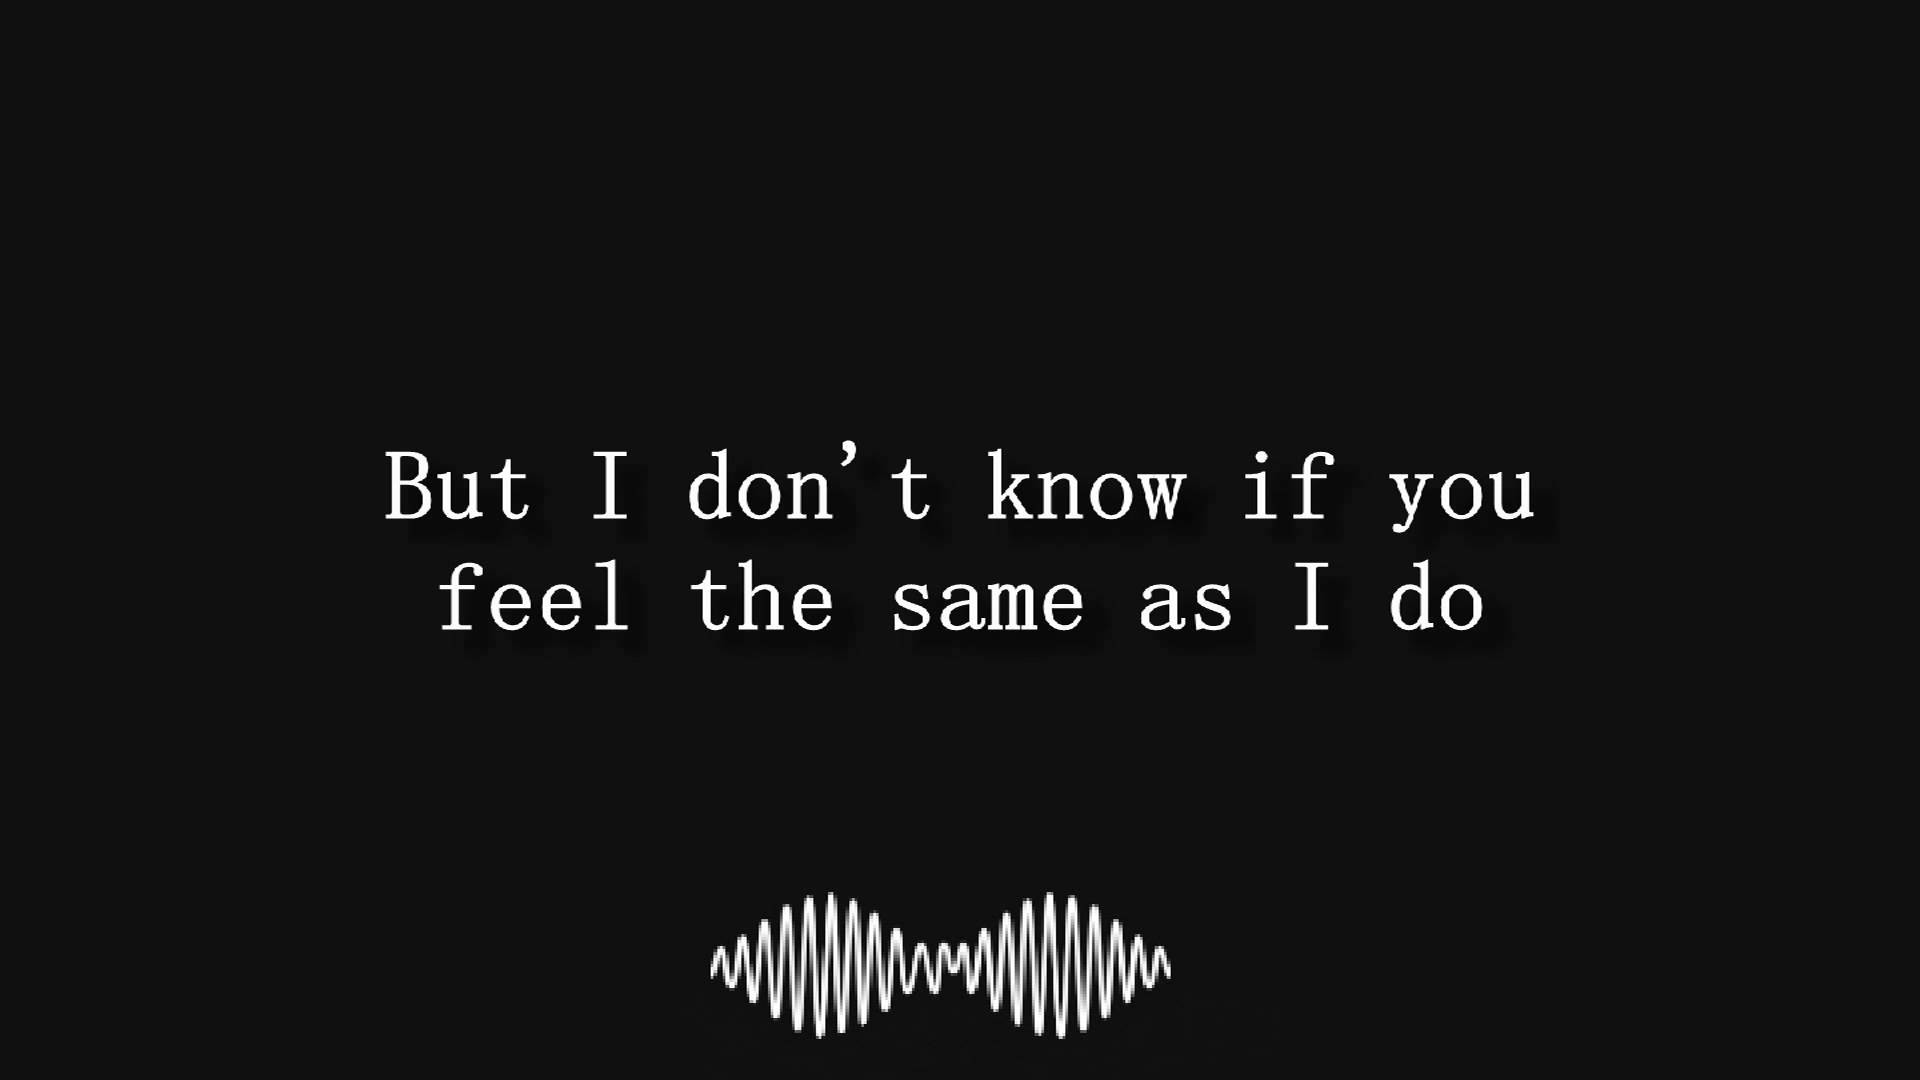 1920x1080 Arctic Monkeys (lyrics) - YouTube